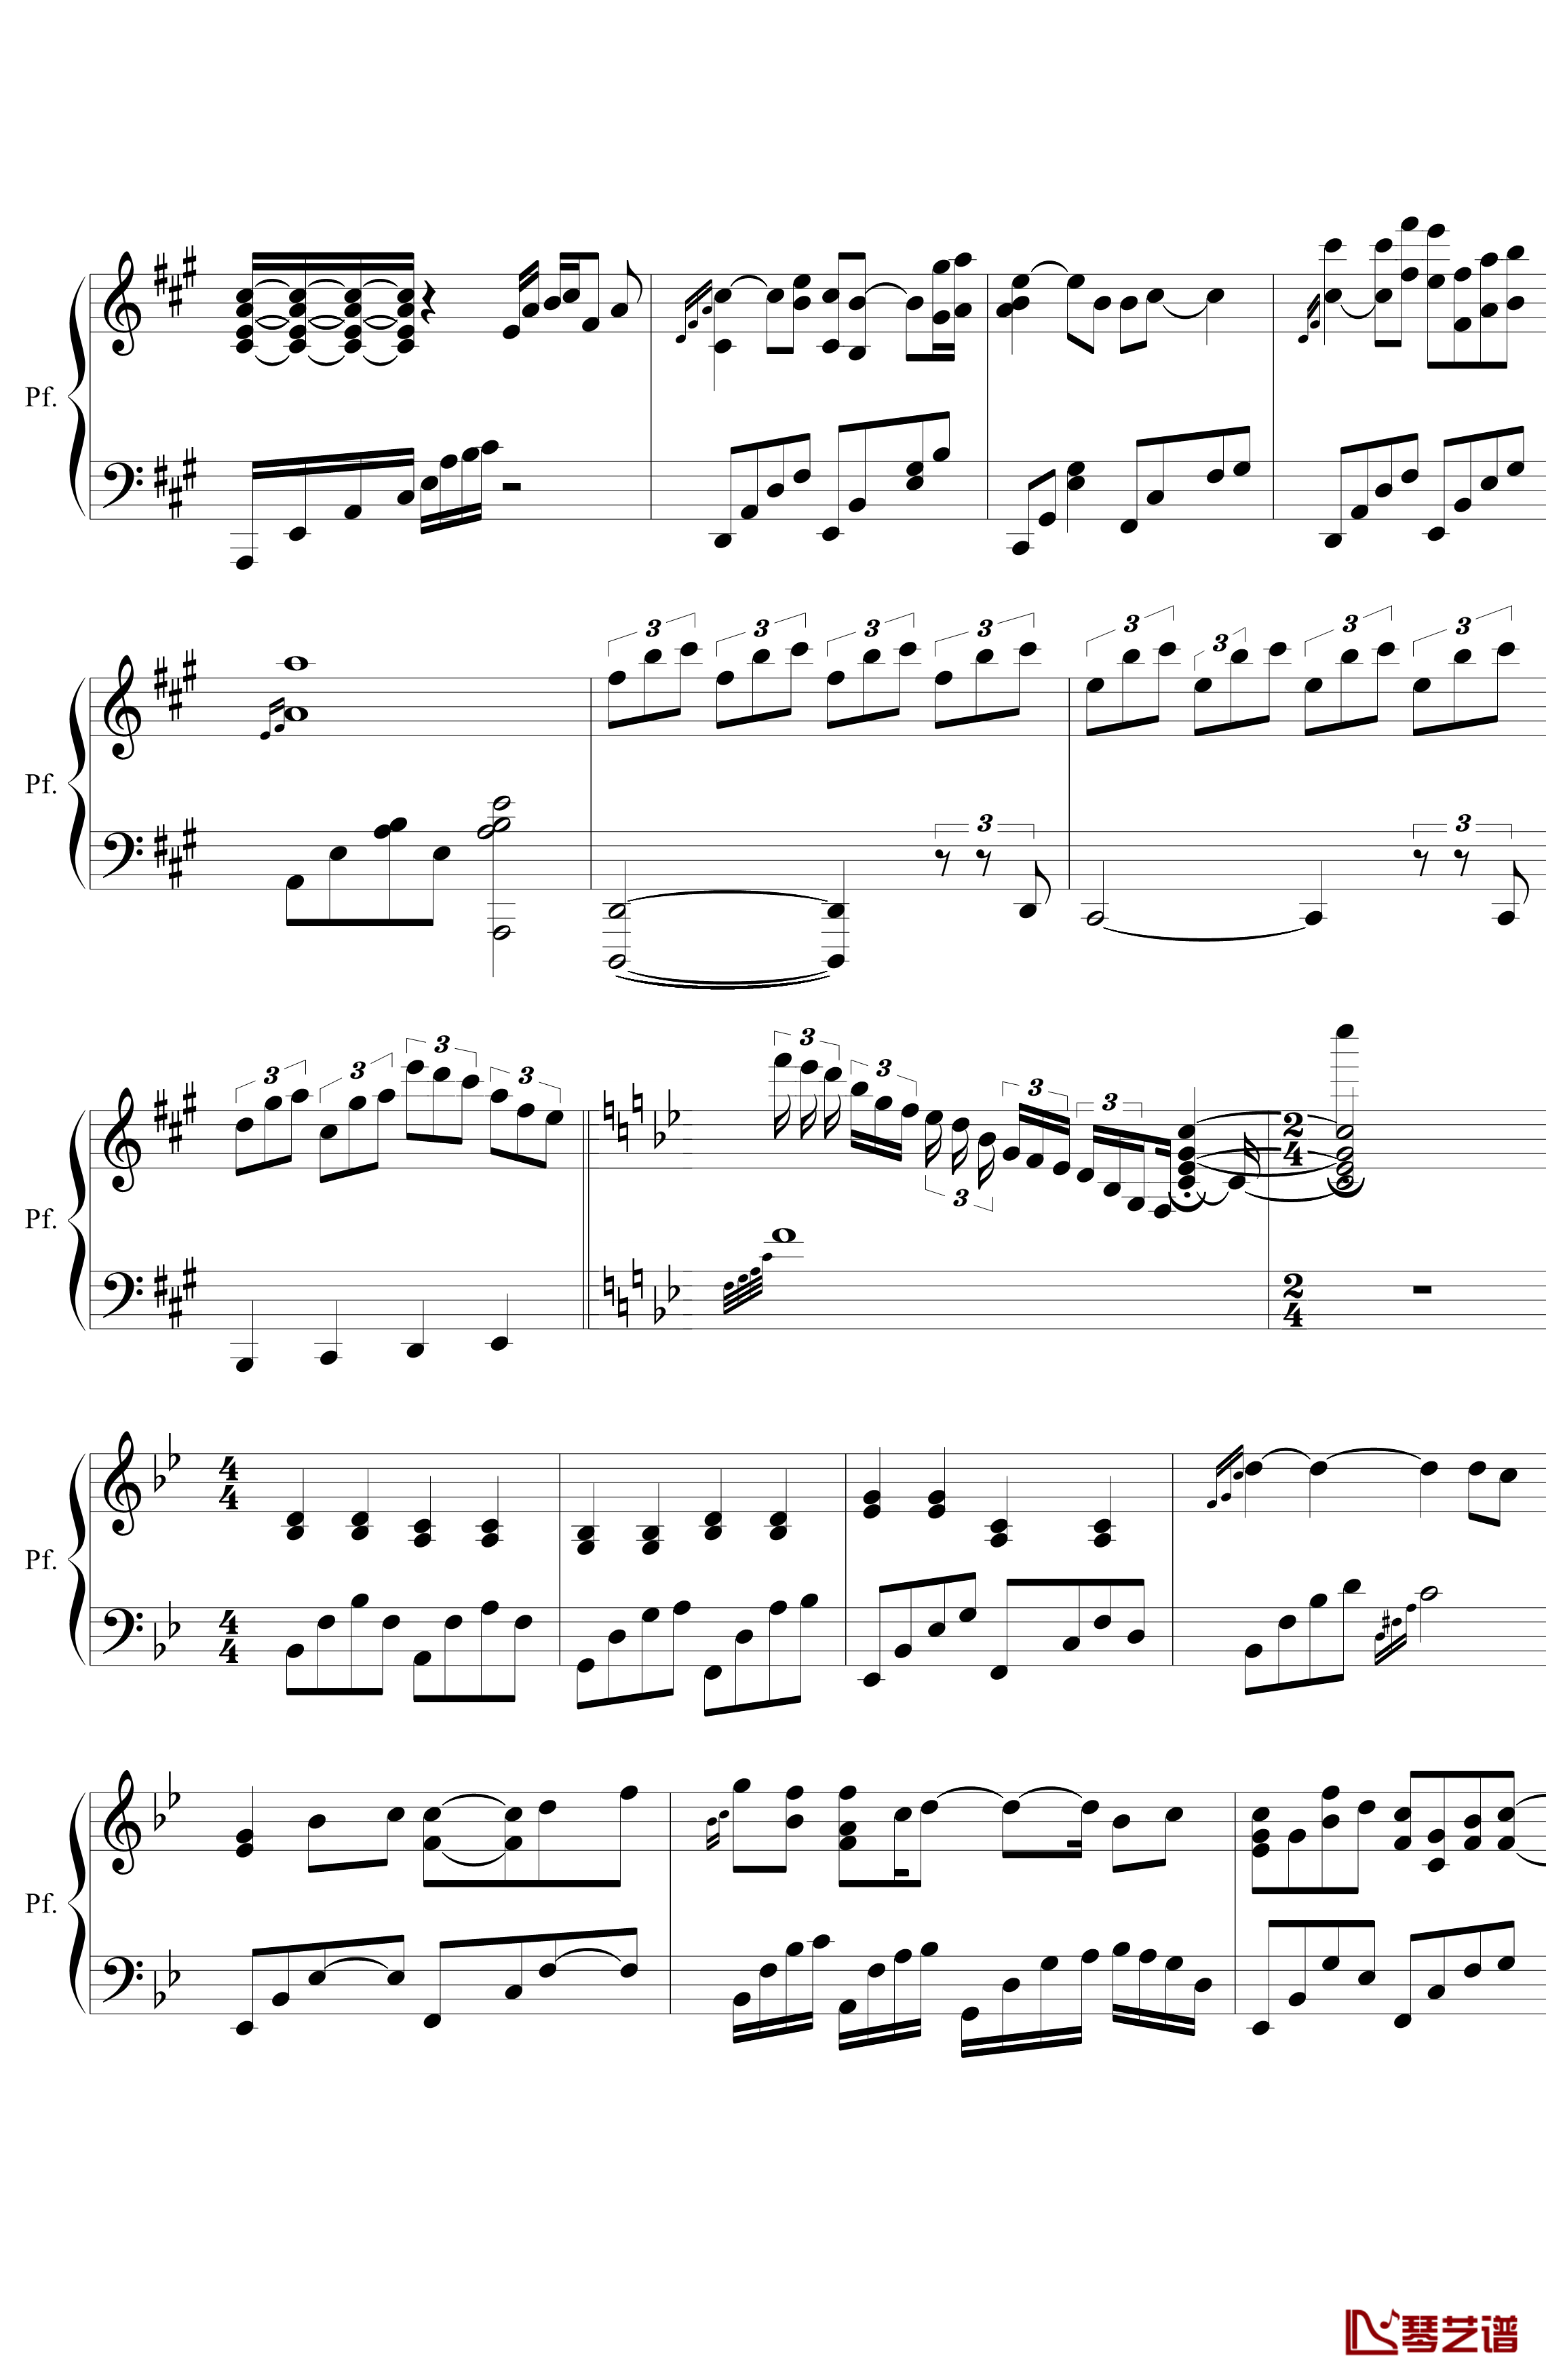 含香敛钢琴谱-无限2